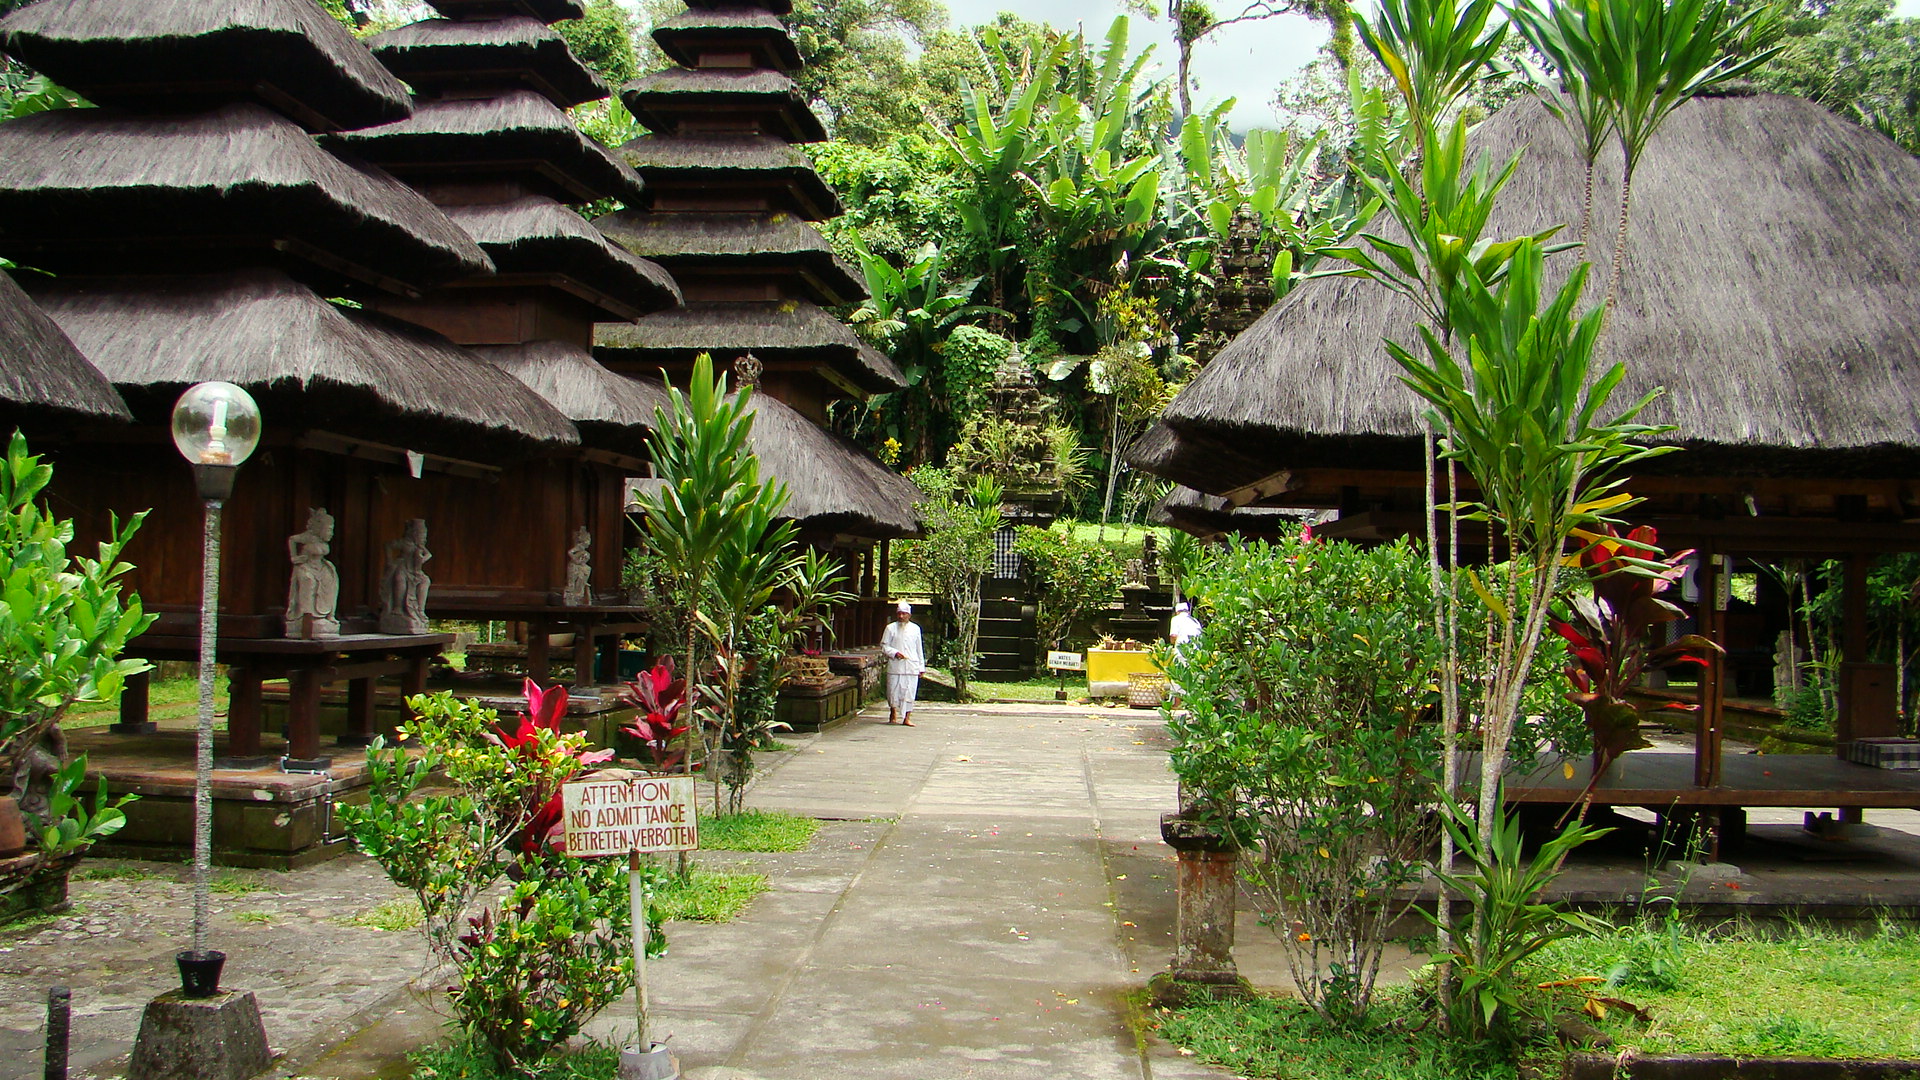 25.02.2010 - Bali 260.jpg